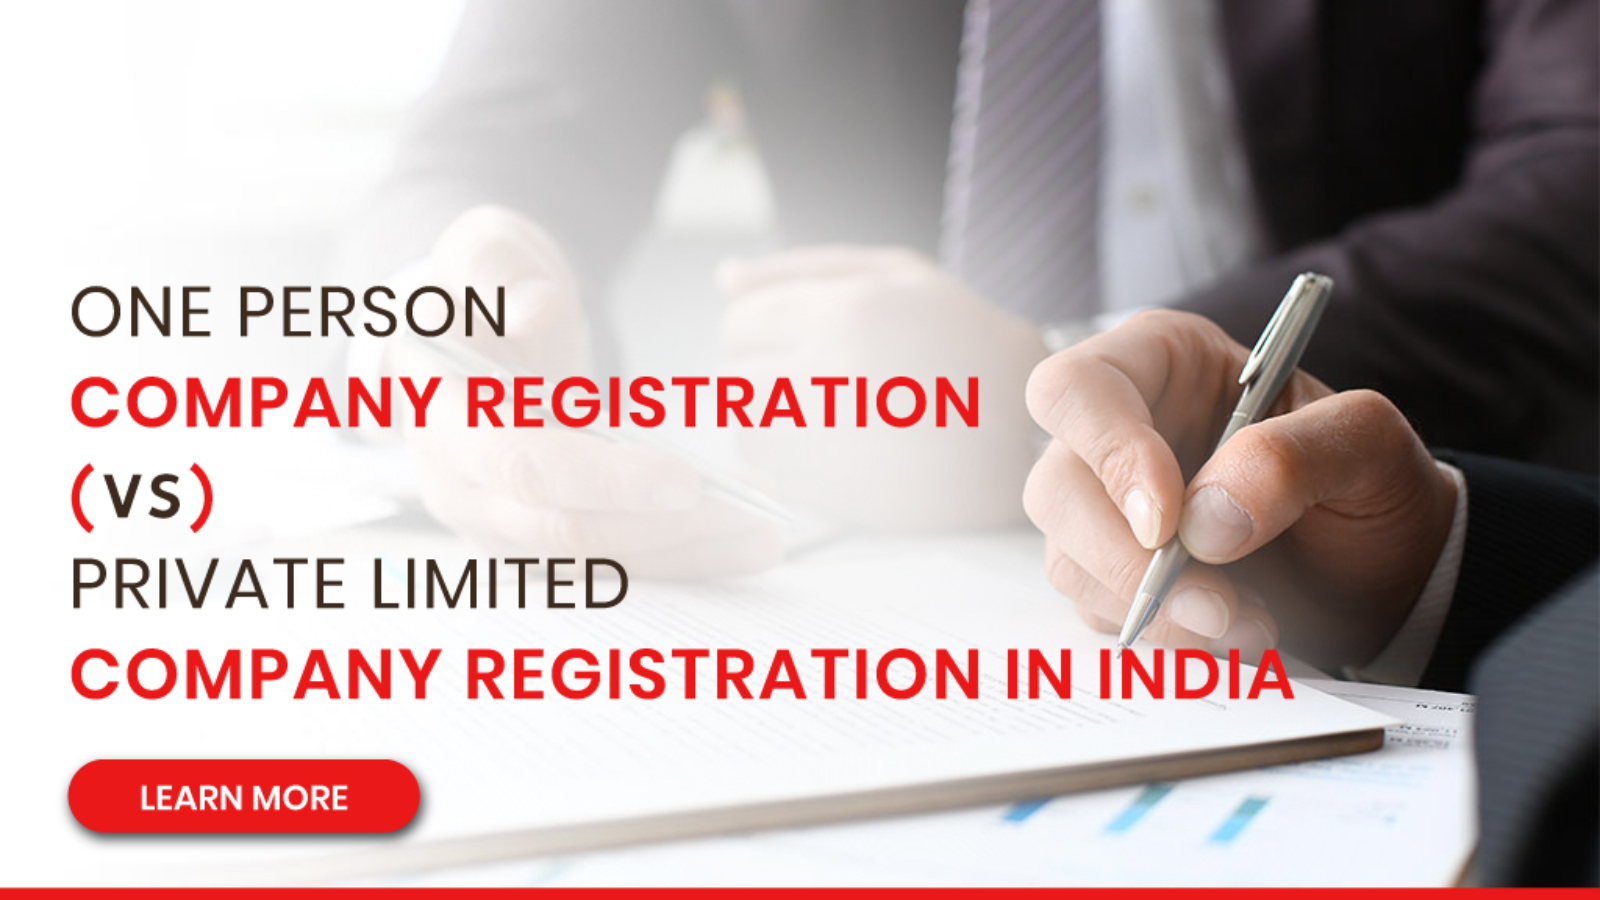 One Person Company registration vs Private limited company registration in India